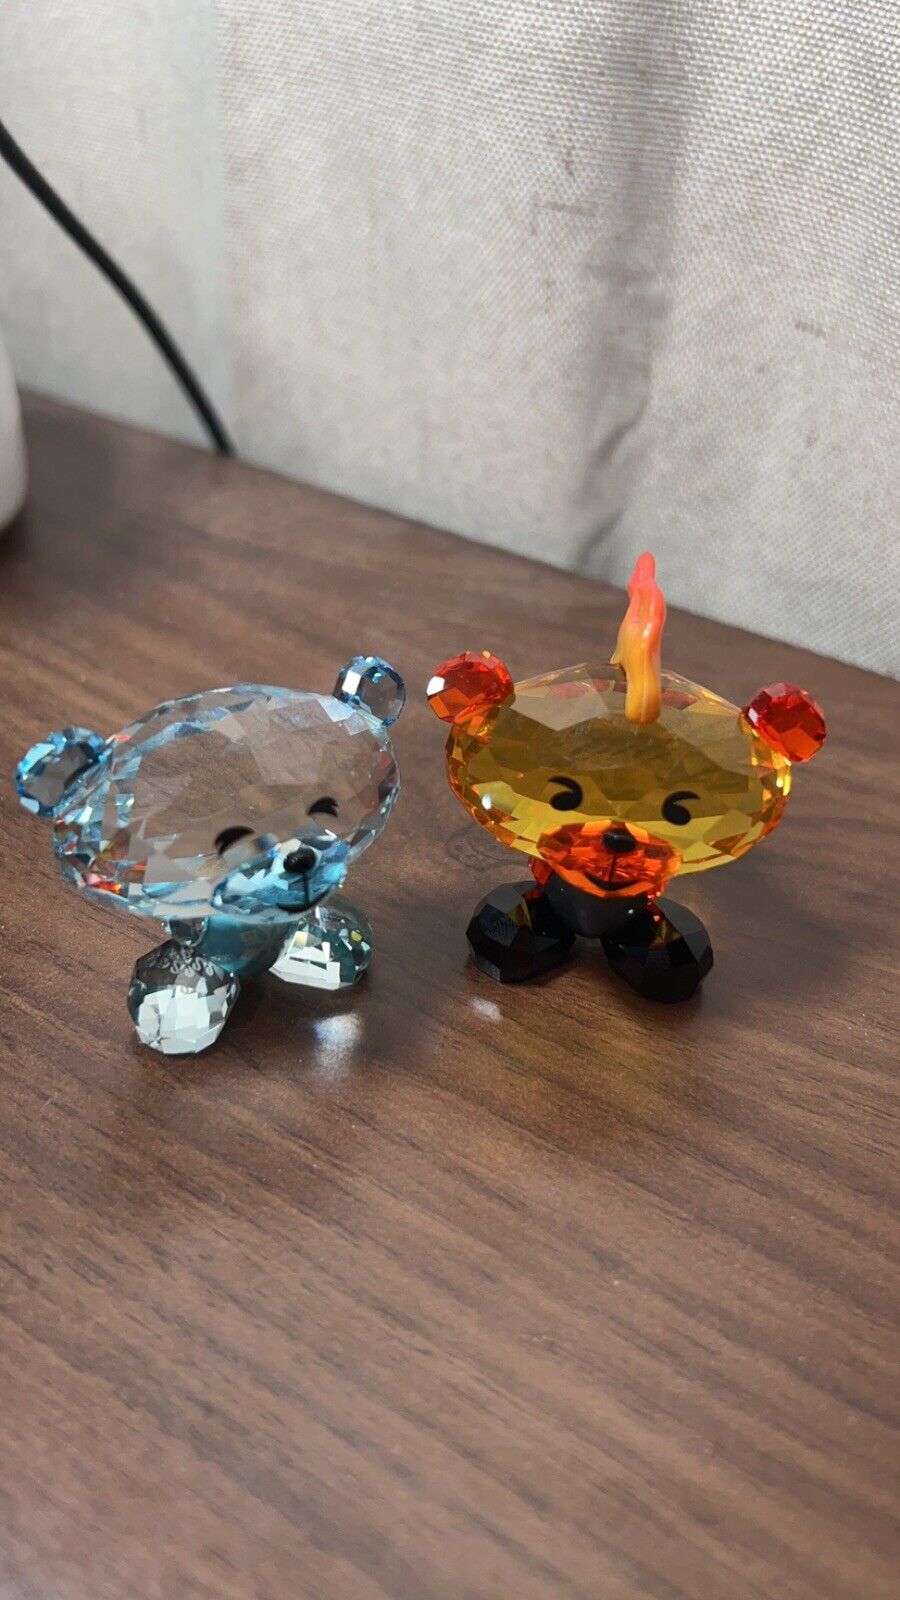 Swarovski Bo Bear Fire & Ice RARE NIB Crystal Figurines #5004494